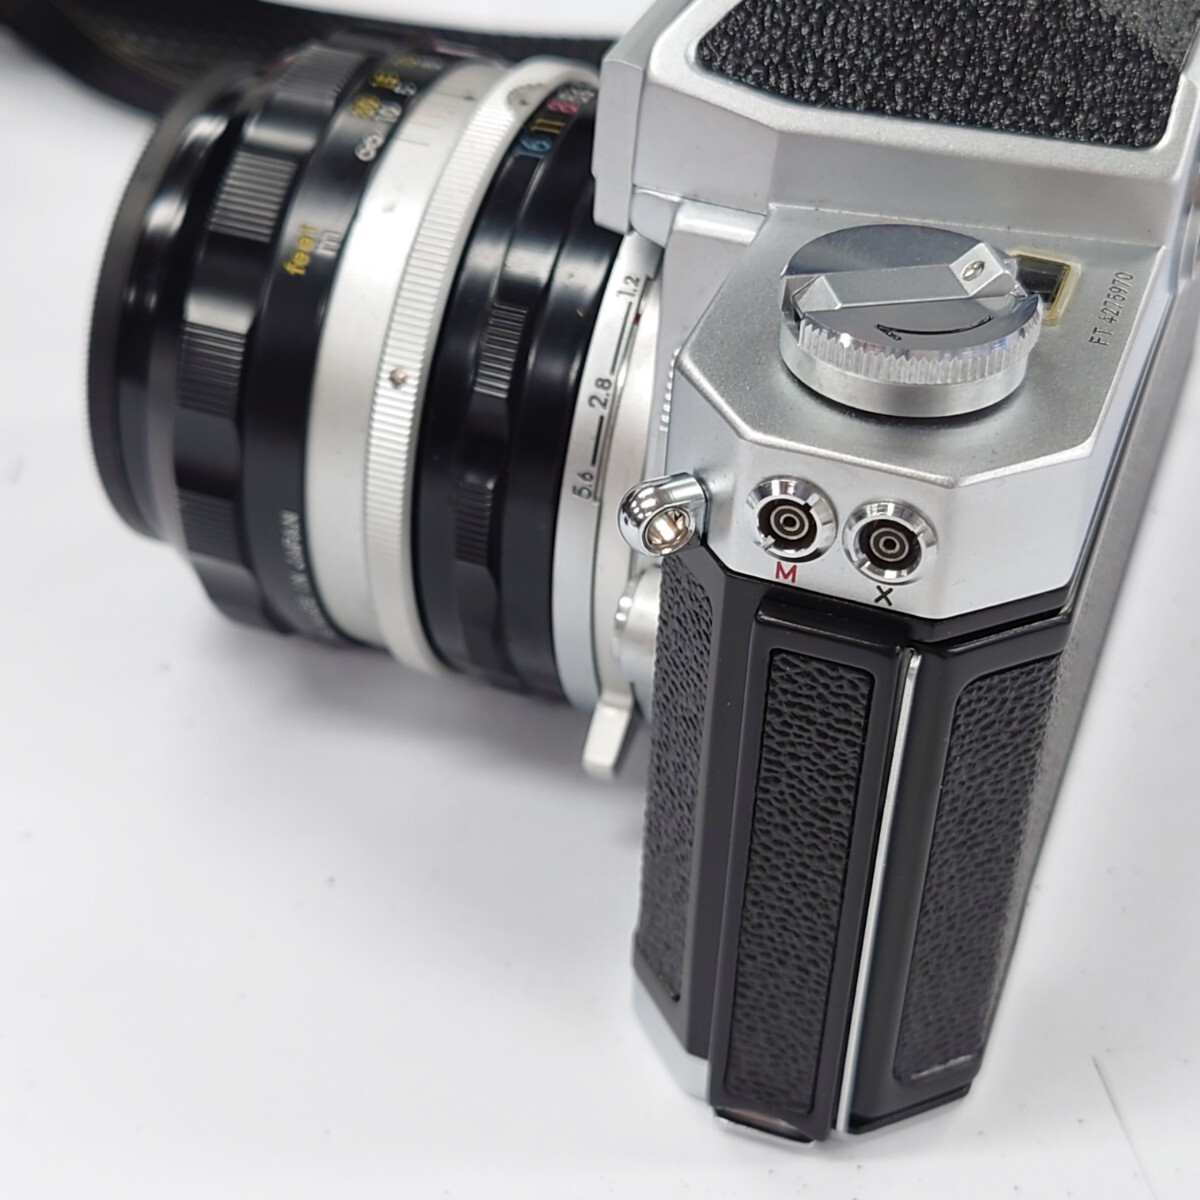 I736 フィルムカメラ Nikon Nikomat FT 4275970 ニコン ニコマート NIKKOR-S.C Auto 1:1.4 f=50mm 中古 ジャンク品 訳あり_画像8